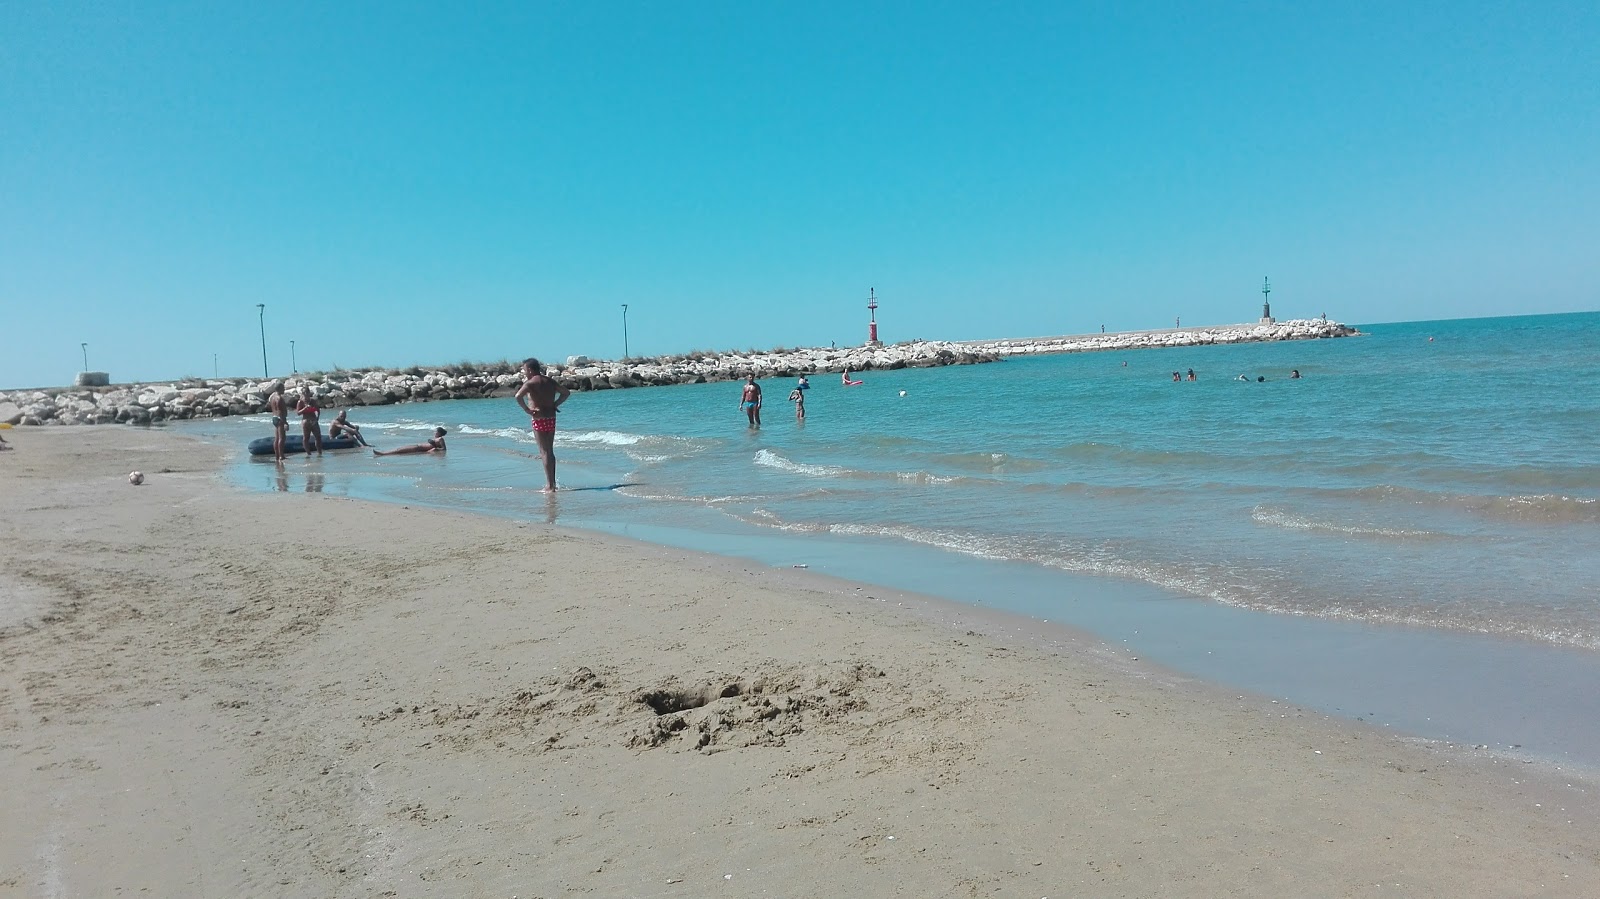 Spiaggia di Foce Varano'in fotoğrafı kahverengi kum yüzey ile